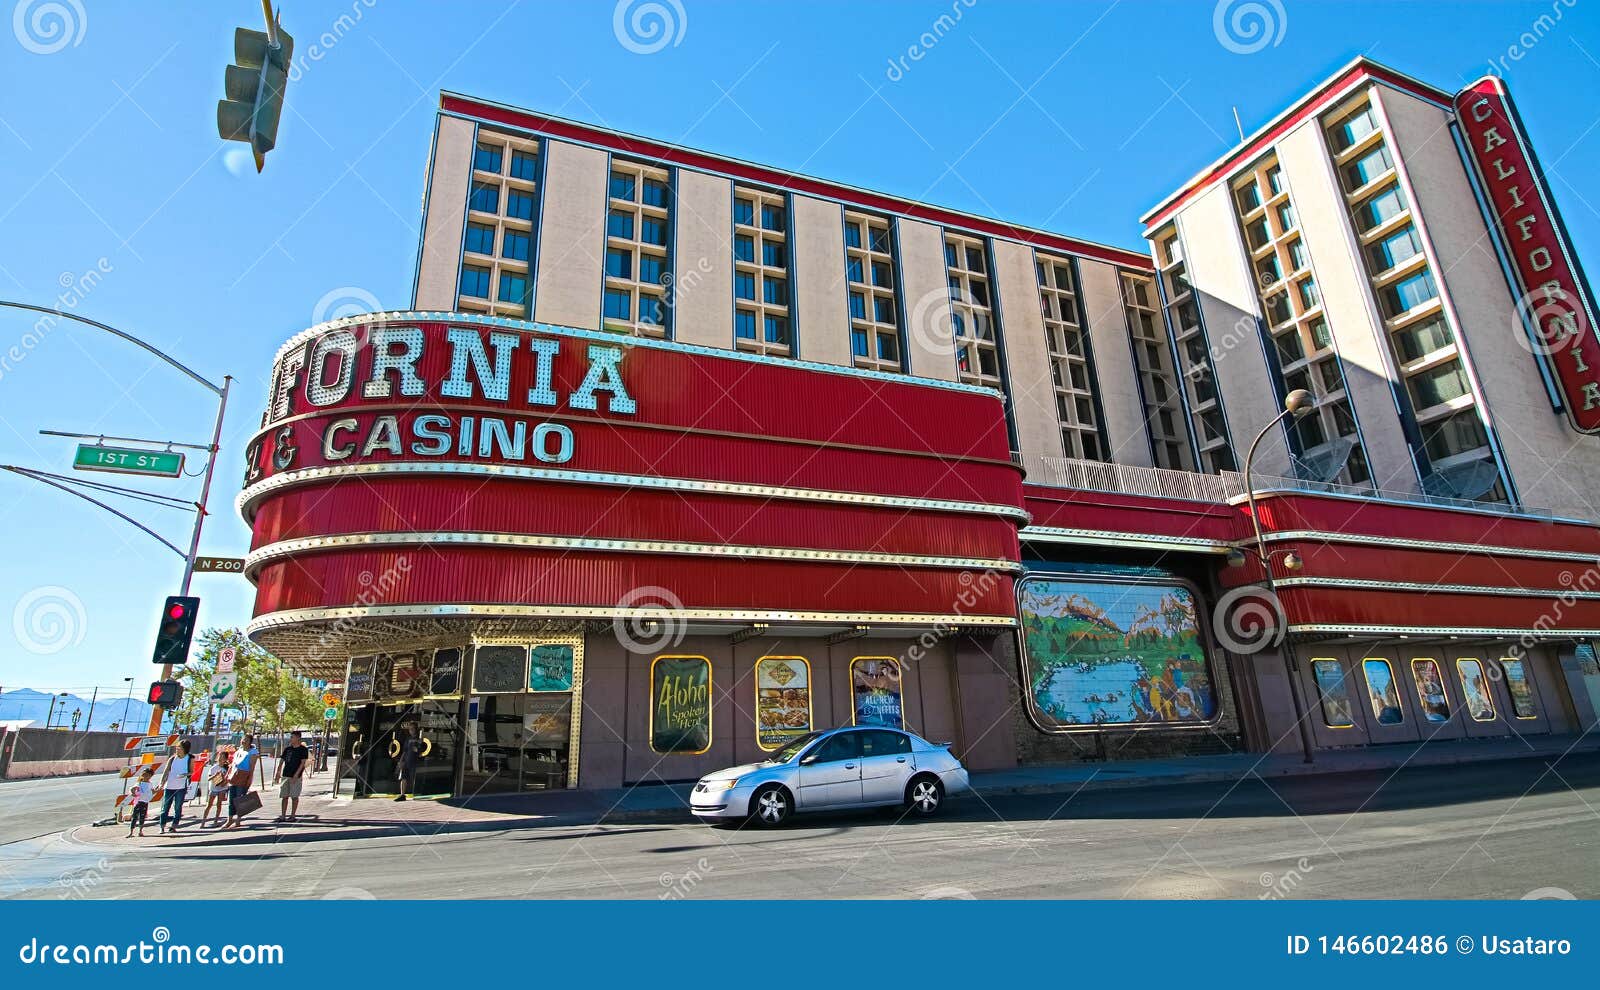 California Hotel and Casino in Las Vegas